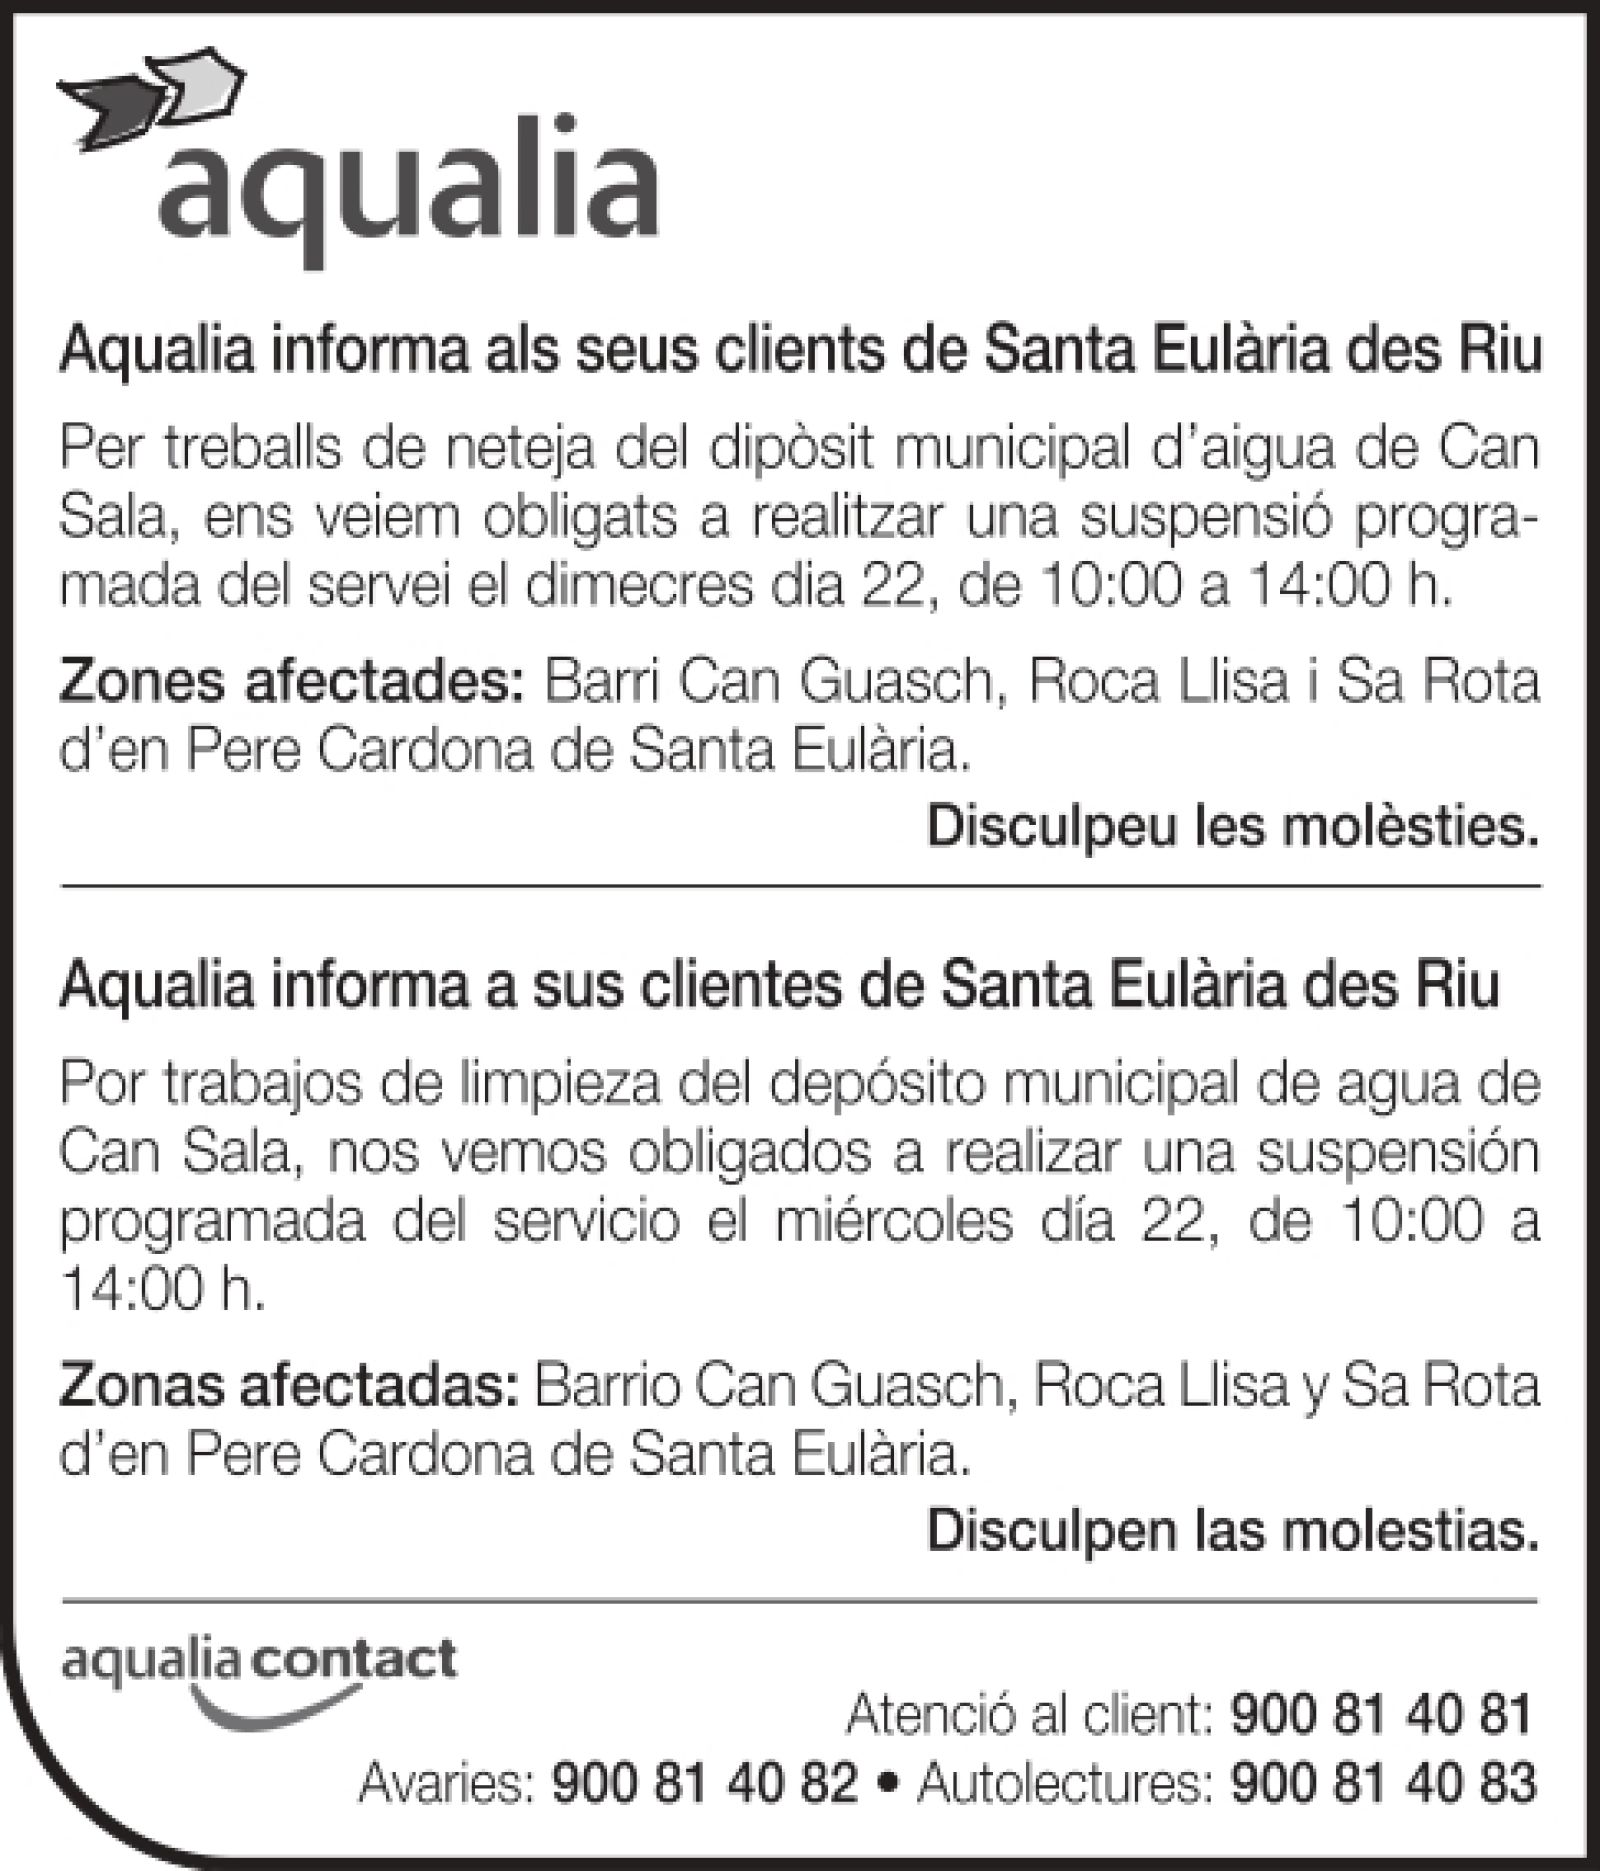 Suspensión temporal del suministro de agua en zonas de Santa Eulària des Riu el 22 de diciembre